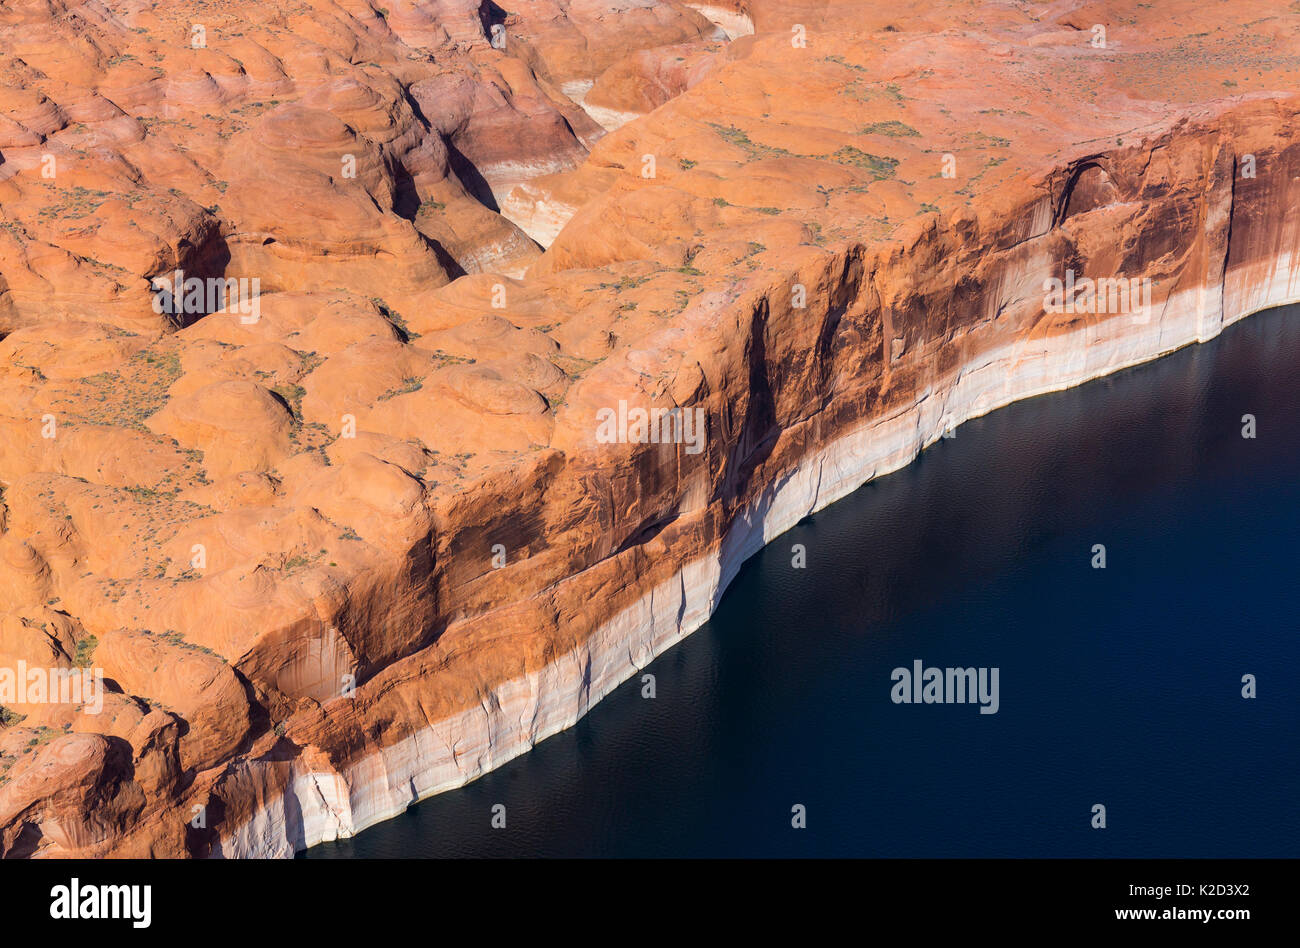 Vue aérienne de falaises au bord du lac Powell, près de Page, Arizona, sur la frontière de l'Utah, USA, février 2015. Le lac Powell est un réservoir sur la rivière Colorado, et est le deuxième plus grand lac artificiel des Etats-Unis. Banque D'Images